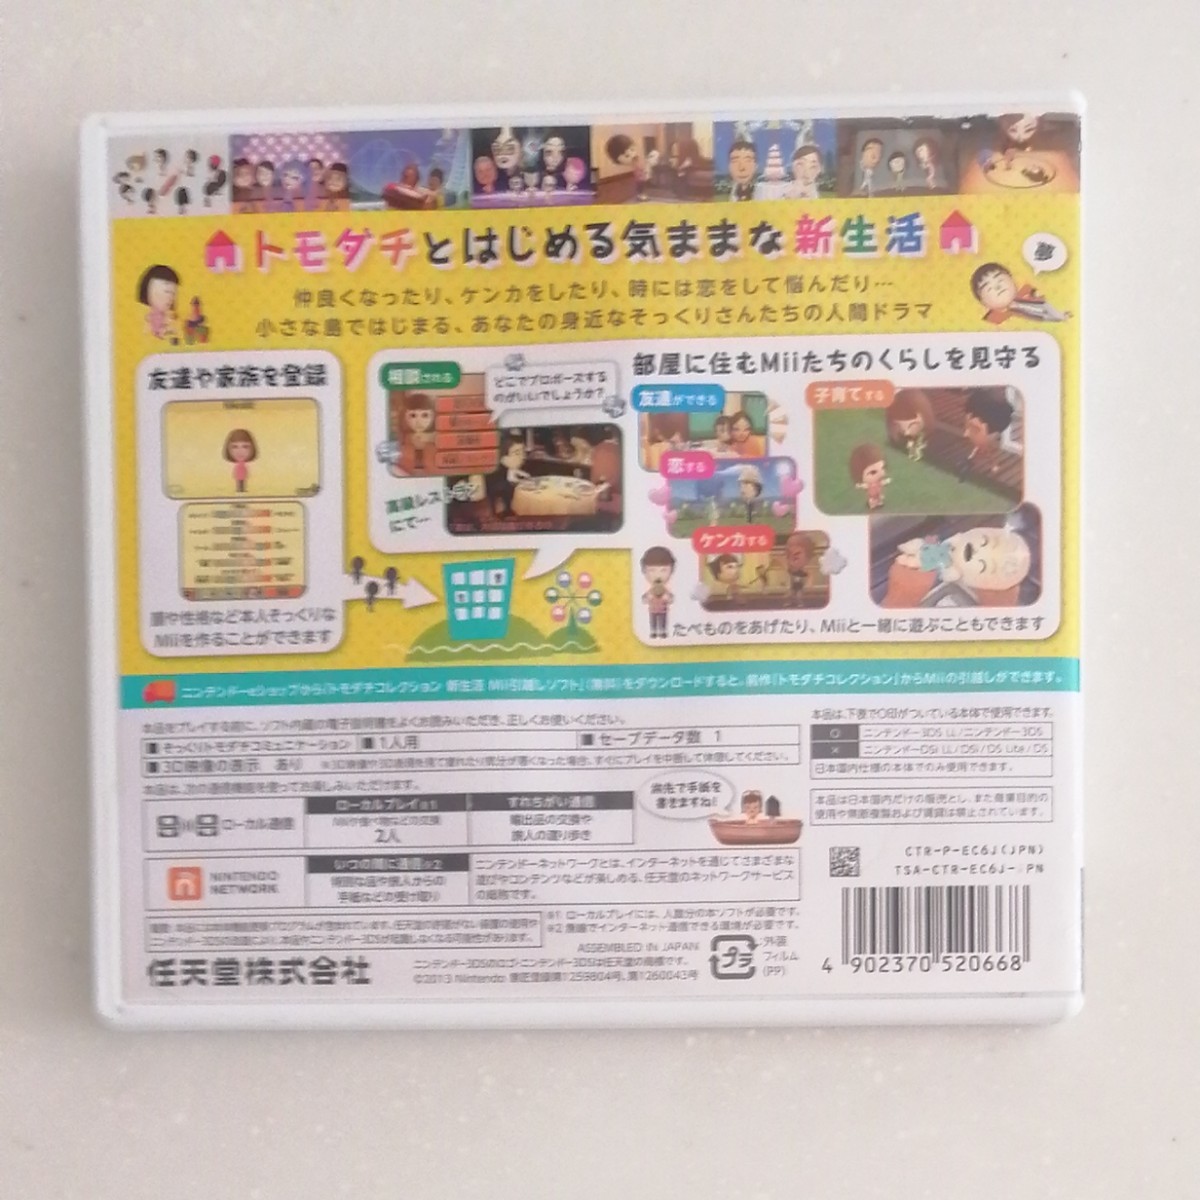 トモダチコレクション新生活 3DSソフト 3DS ニンテンドー3DSソフト トモダチコレクション